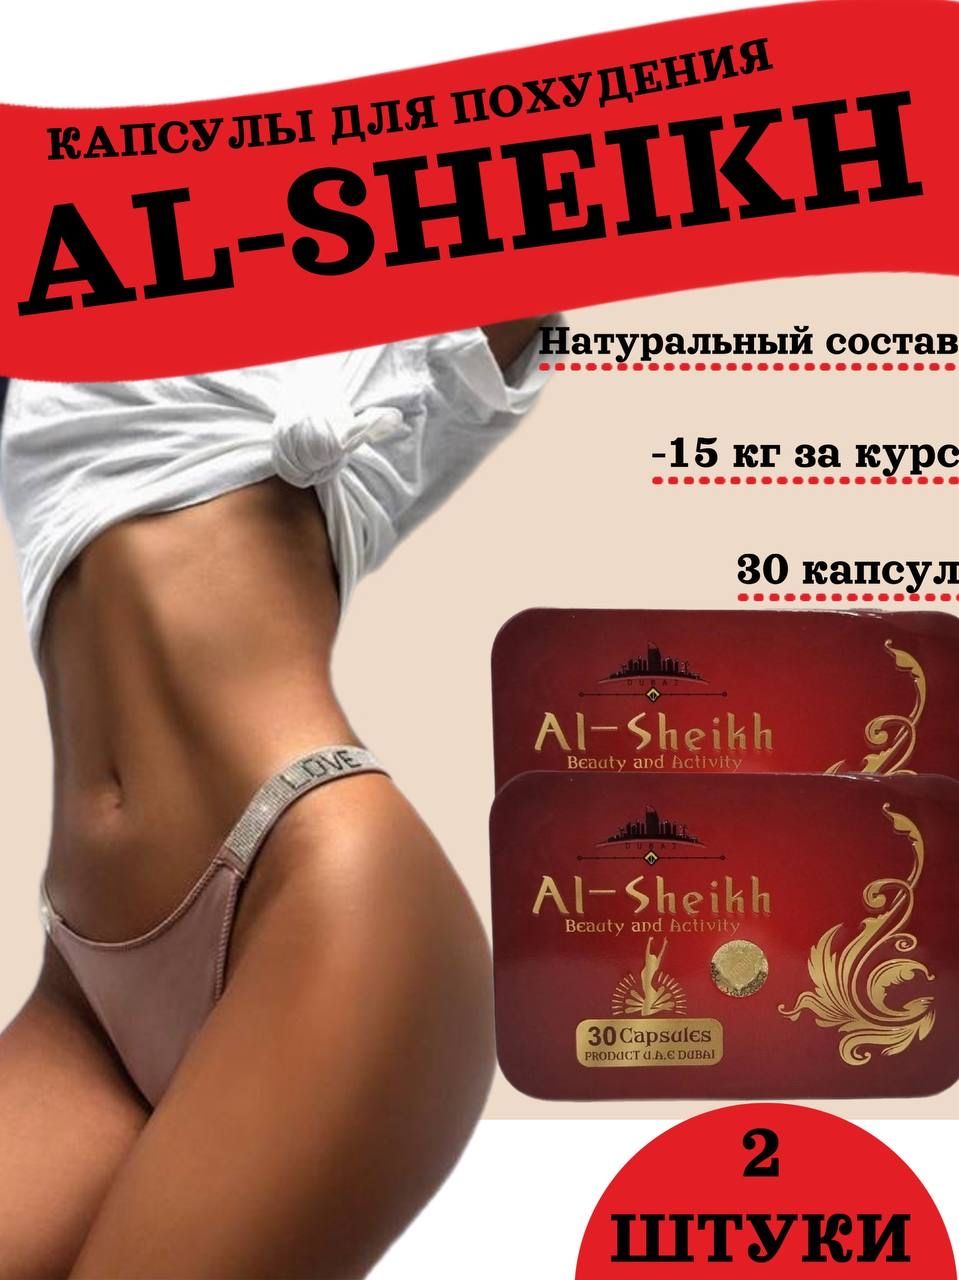 Аль шейх для похудения отзывы. Капсулы ai-Sheikh для похудения. Аль-Шейх капсулы для похудения. Al Sheikh капсулы. Эль Шейх капсулы.